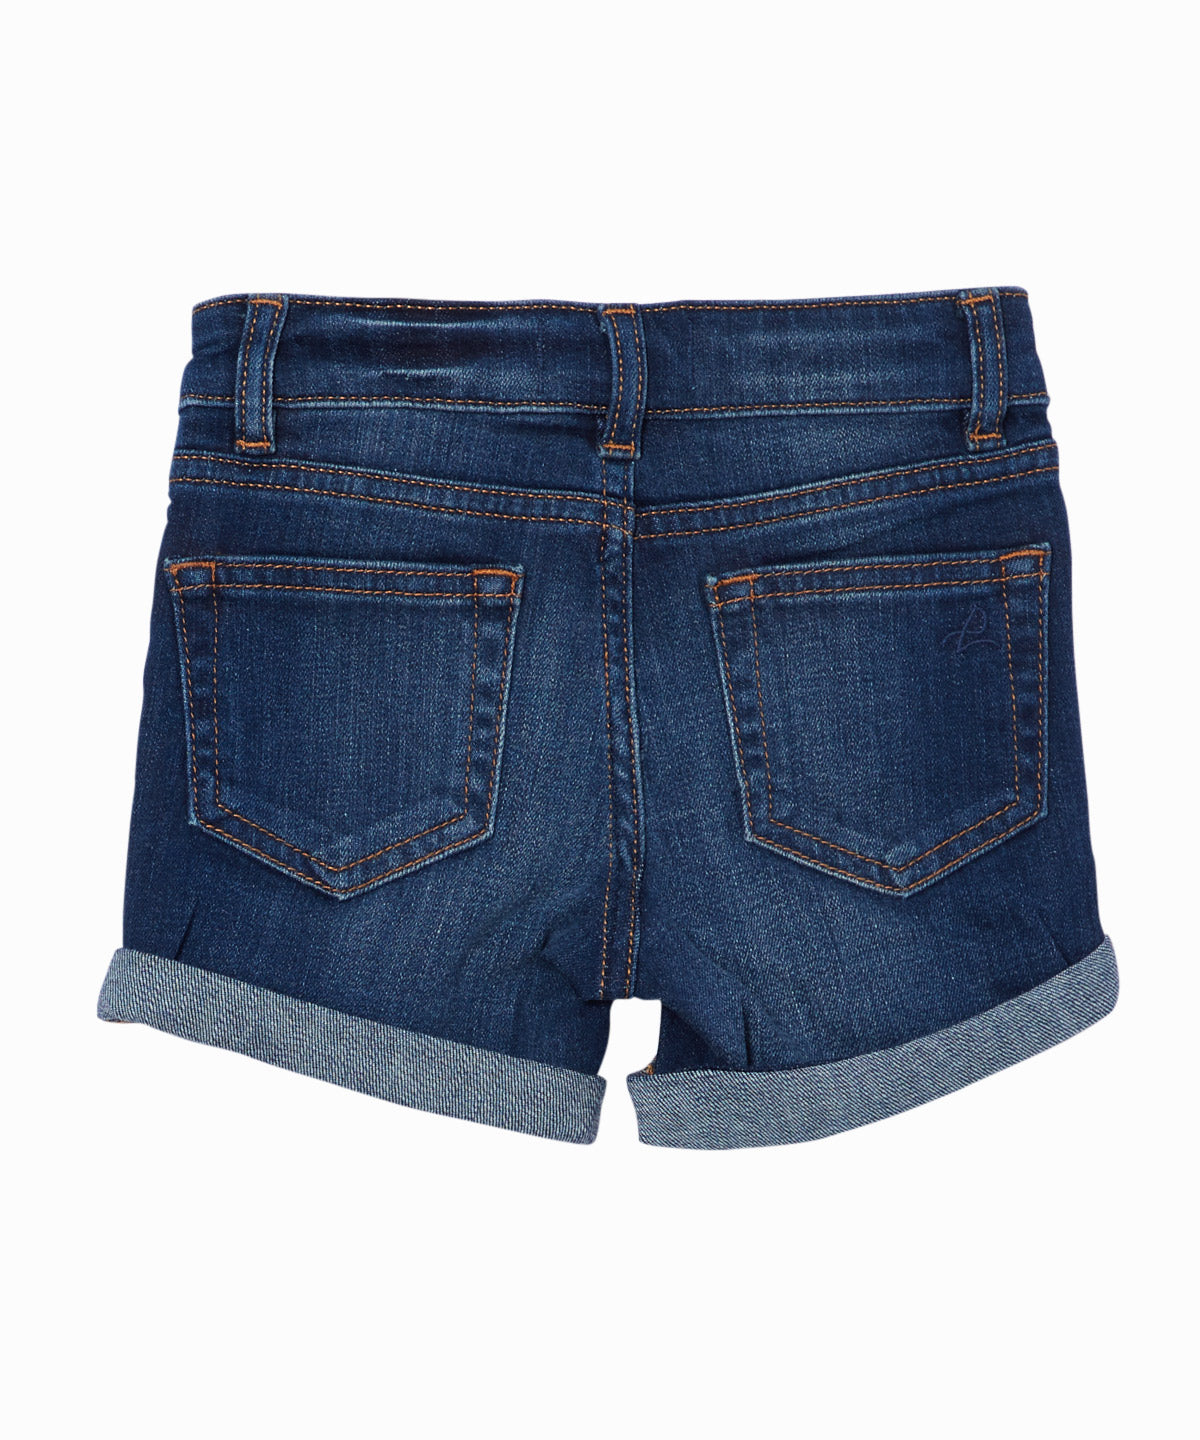 cuffed jean shorts